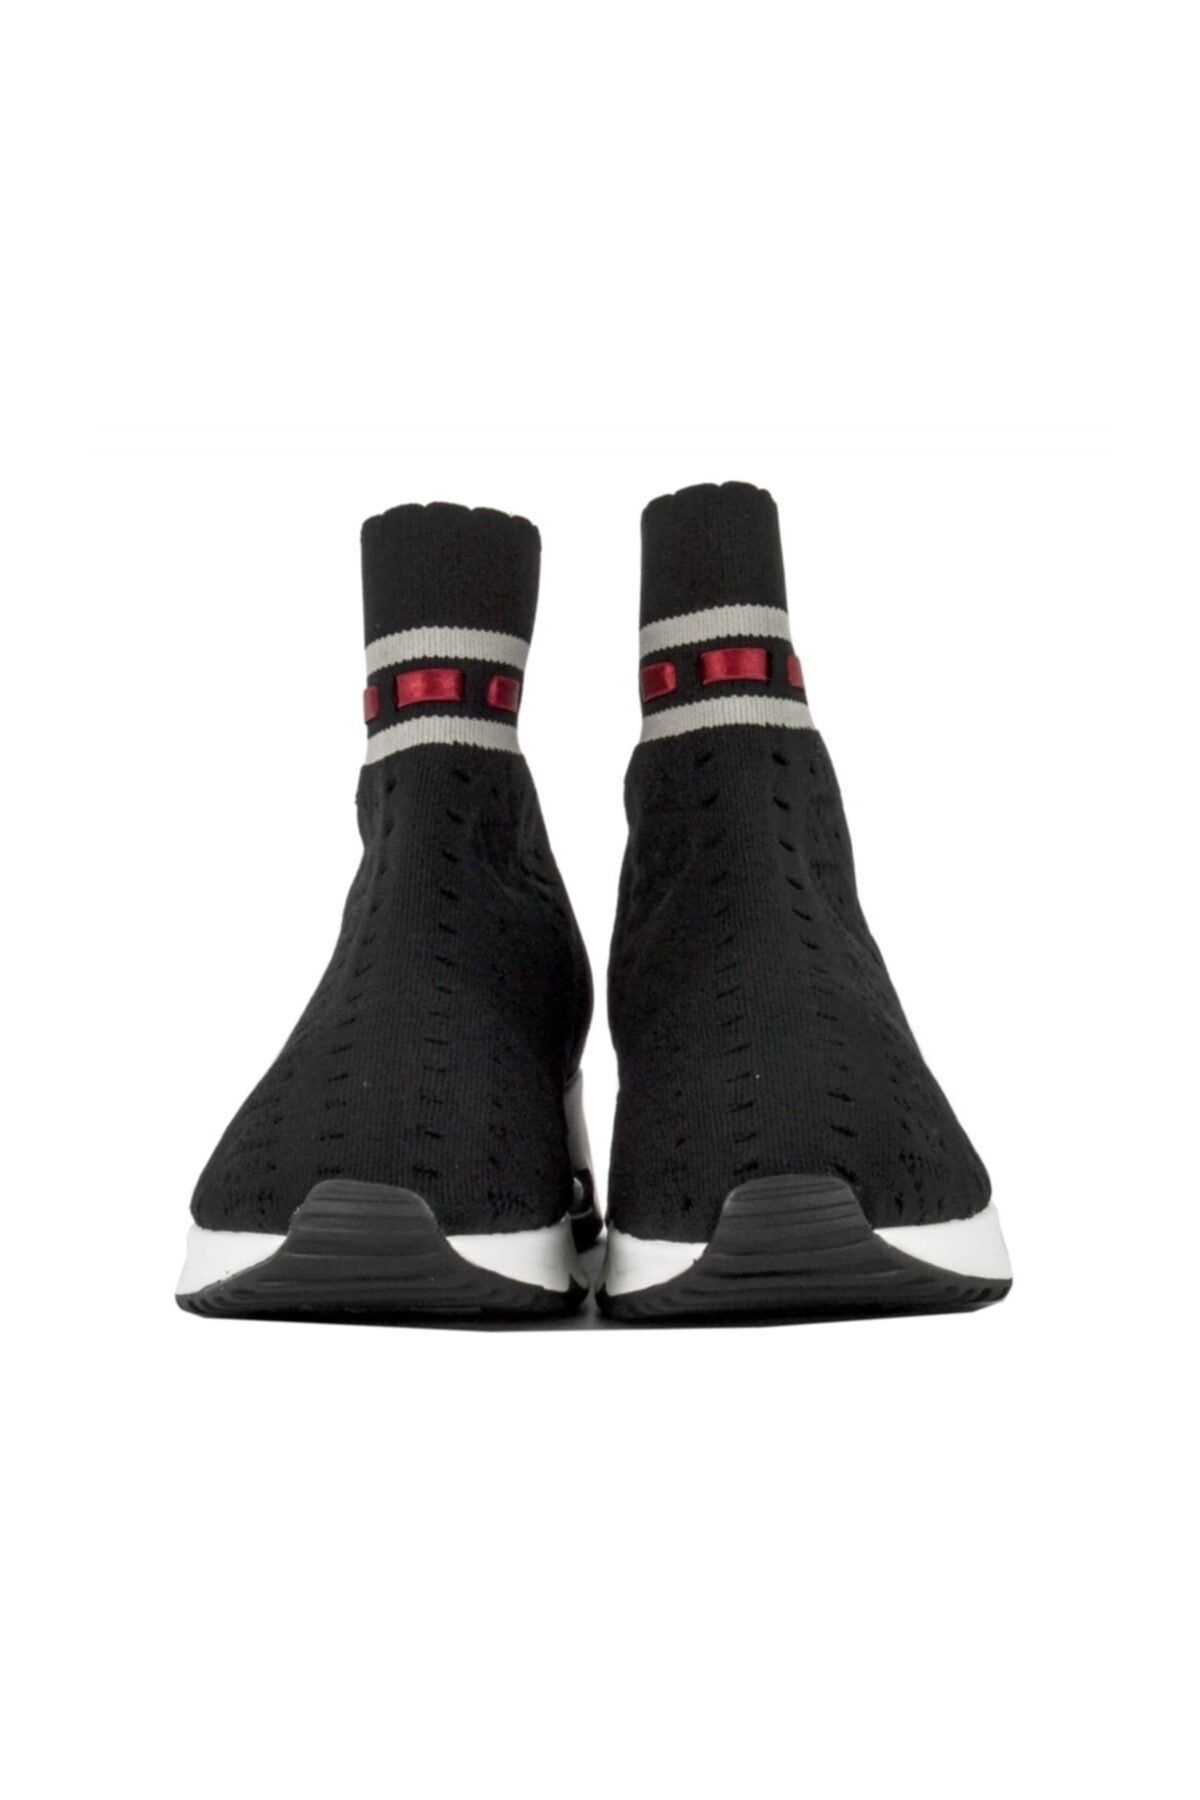 Ash Kadın Çorap Spor Ayakkabı Siyah Gri Link